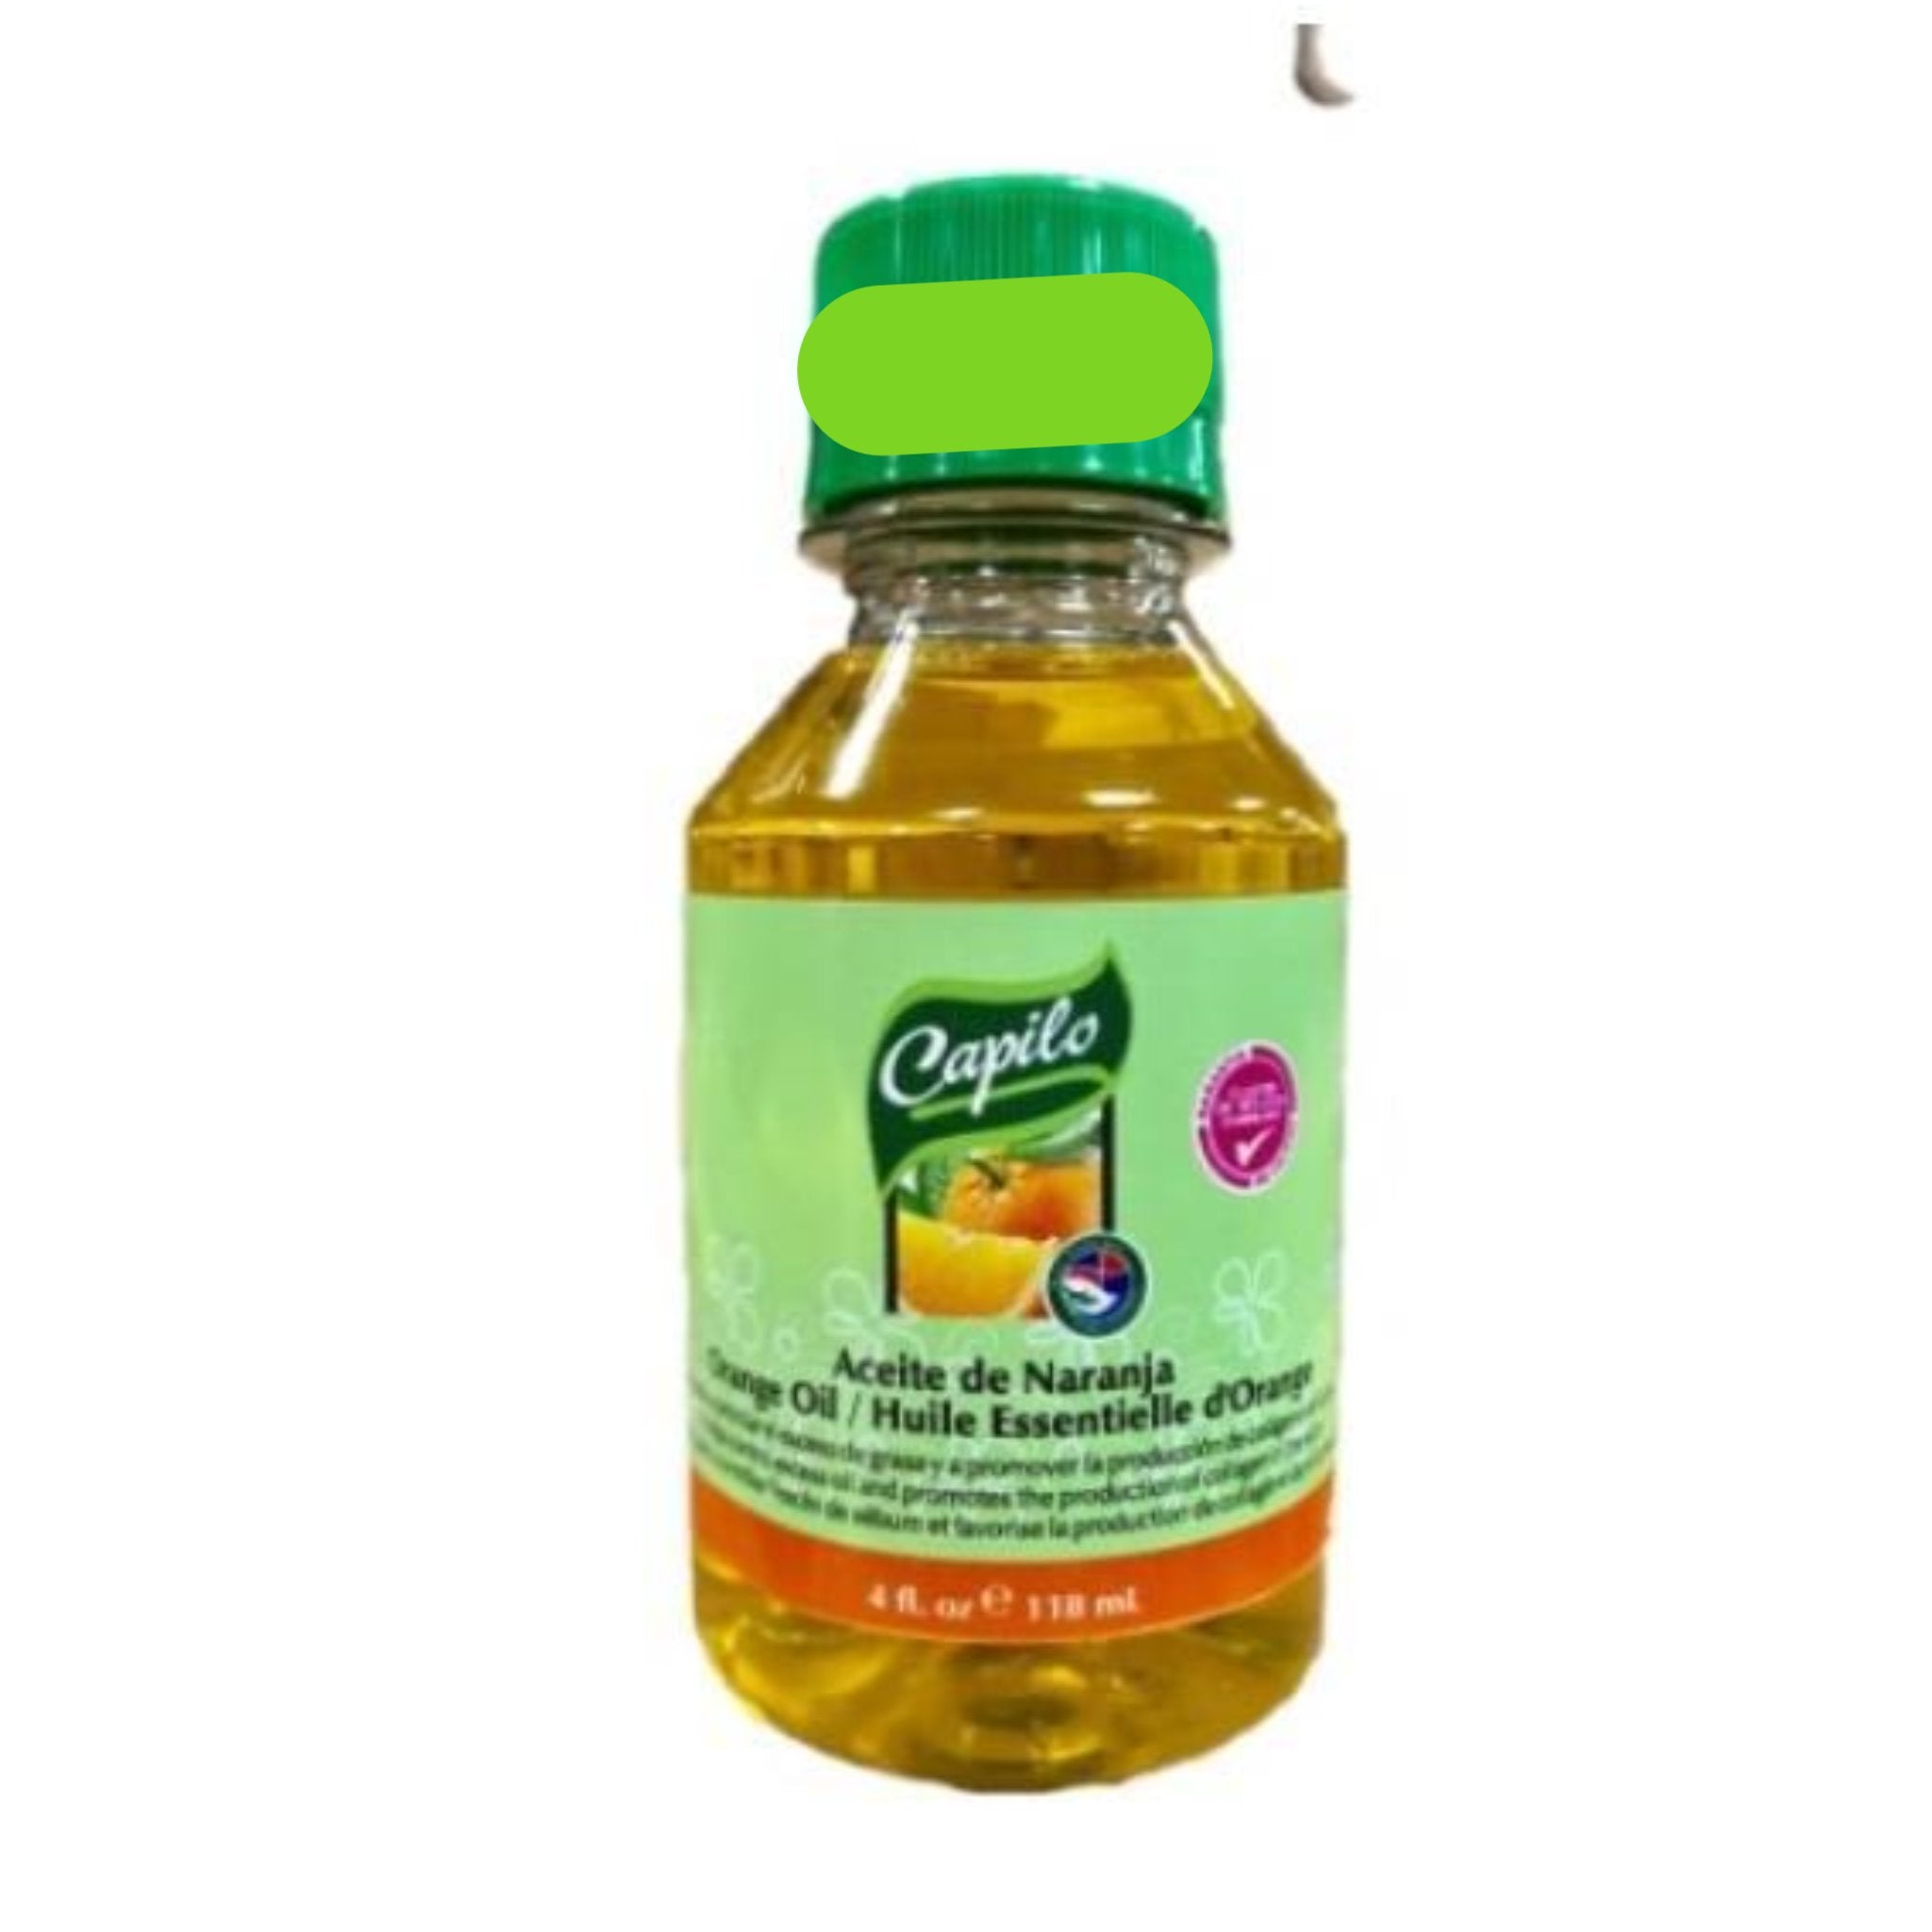 Capilo Orange Oil 4 oz